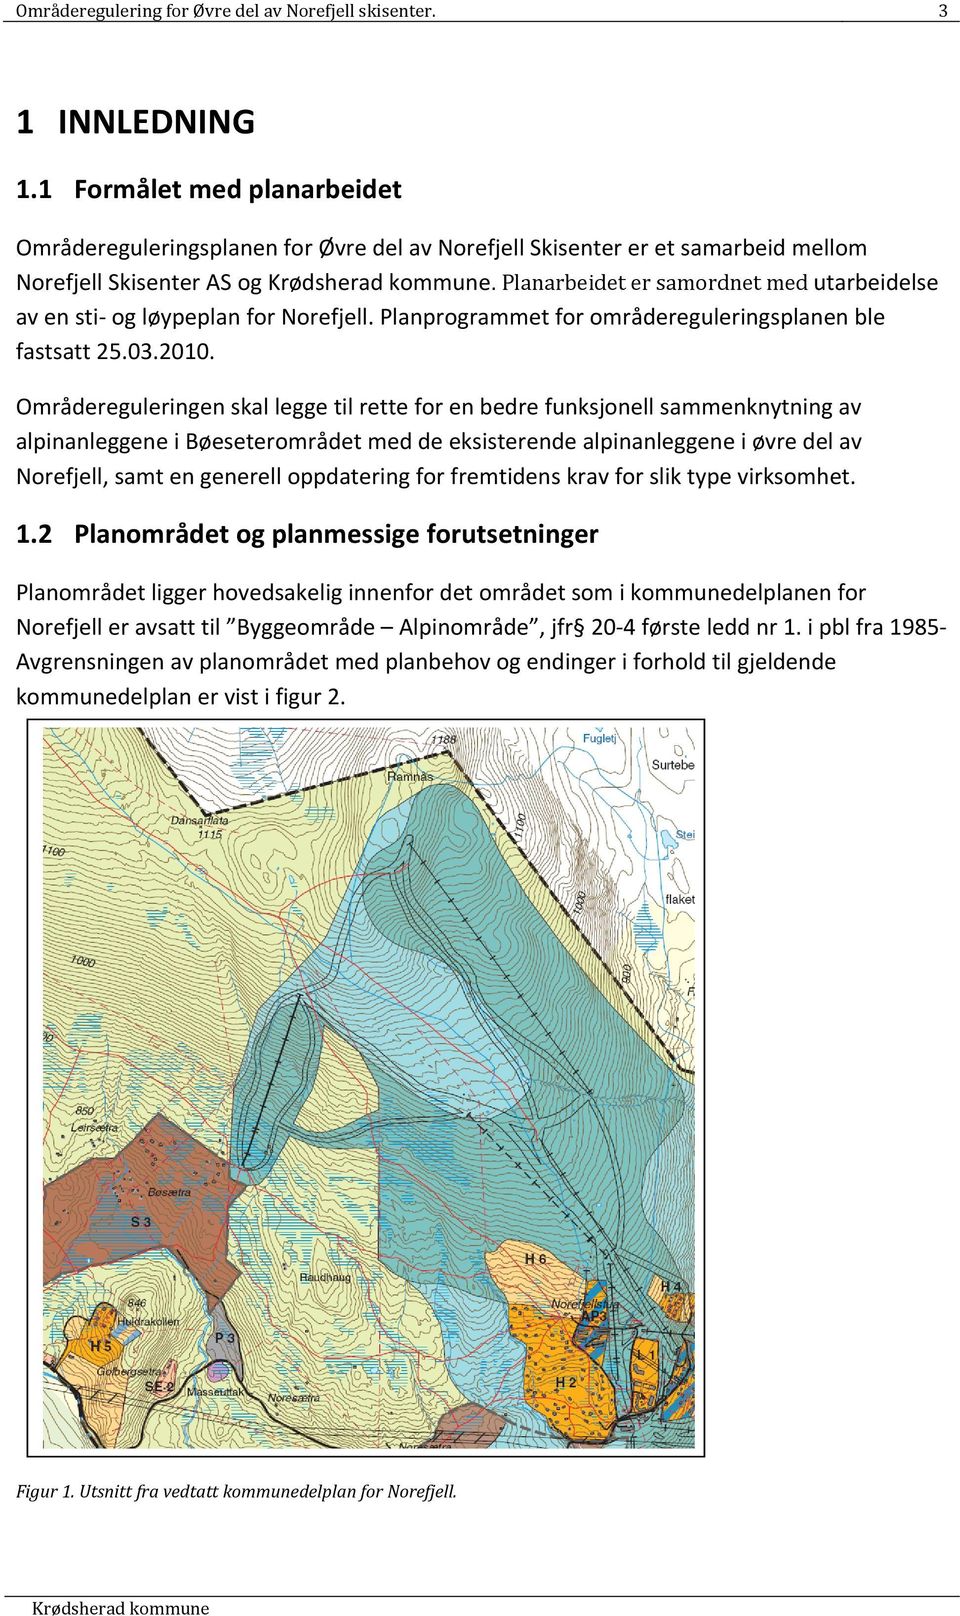 Planarbeidet er samordnet med utarbeidelse av en sti og løypeplan for Norefjell. Planprogrammet for områdereguleringsplanen ble fastsatt 25.03.2010.